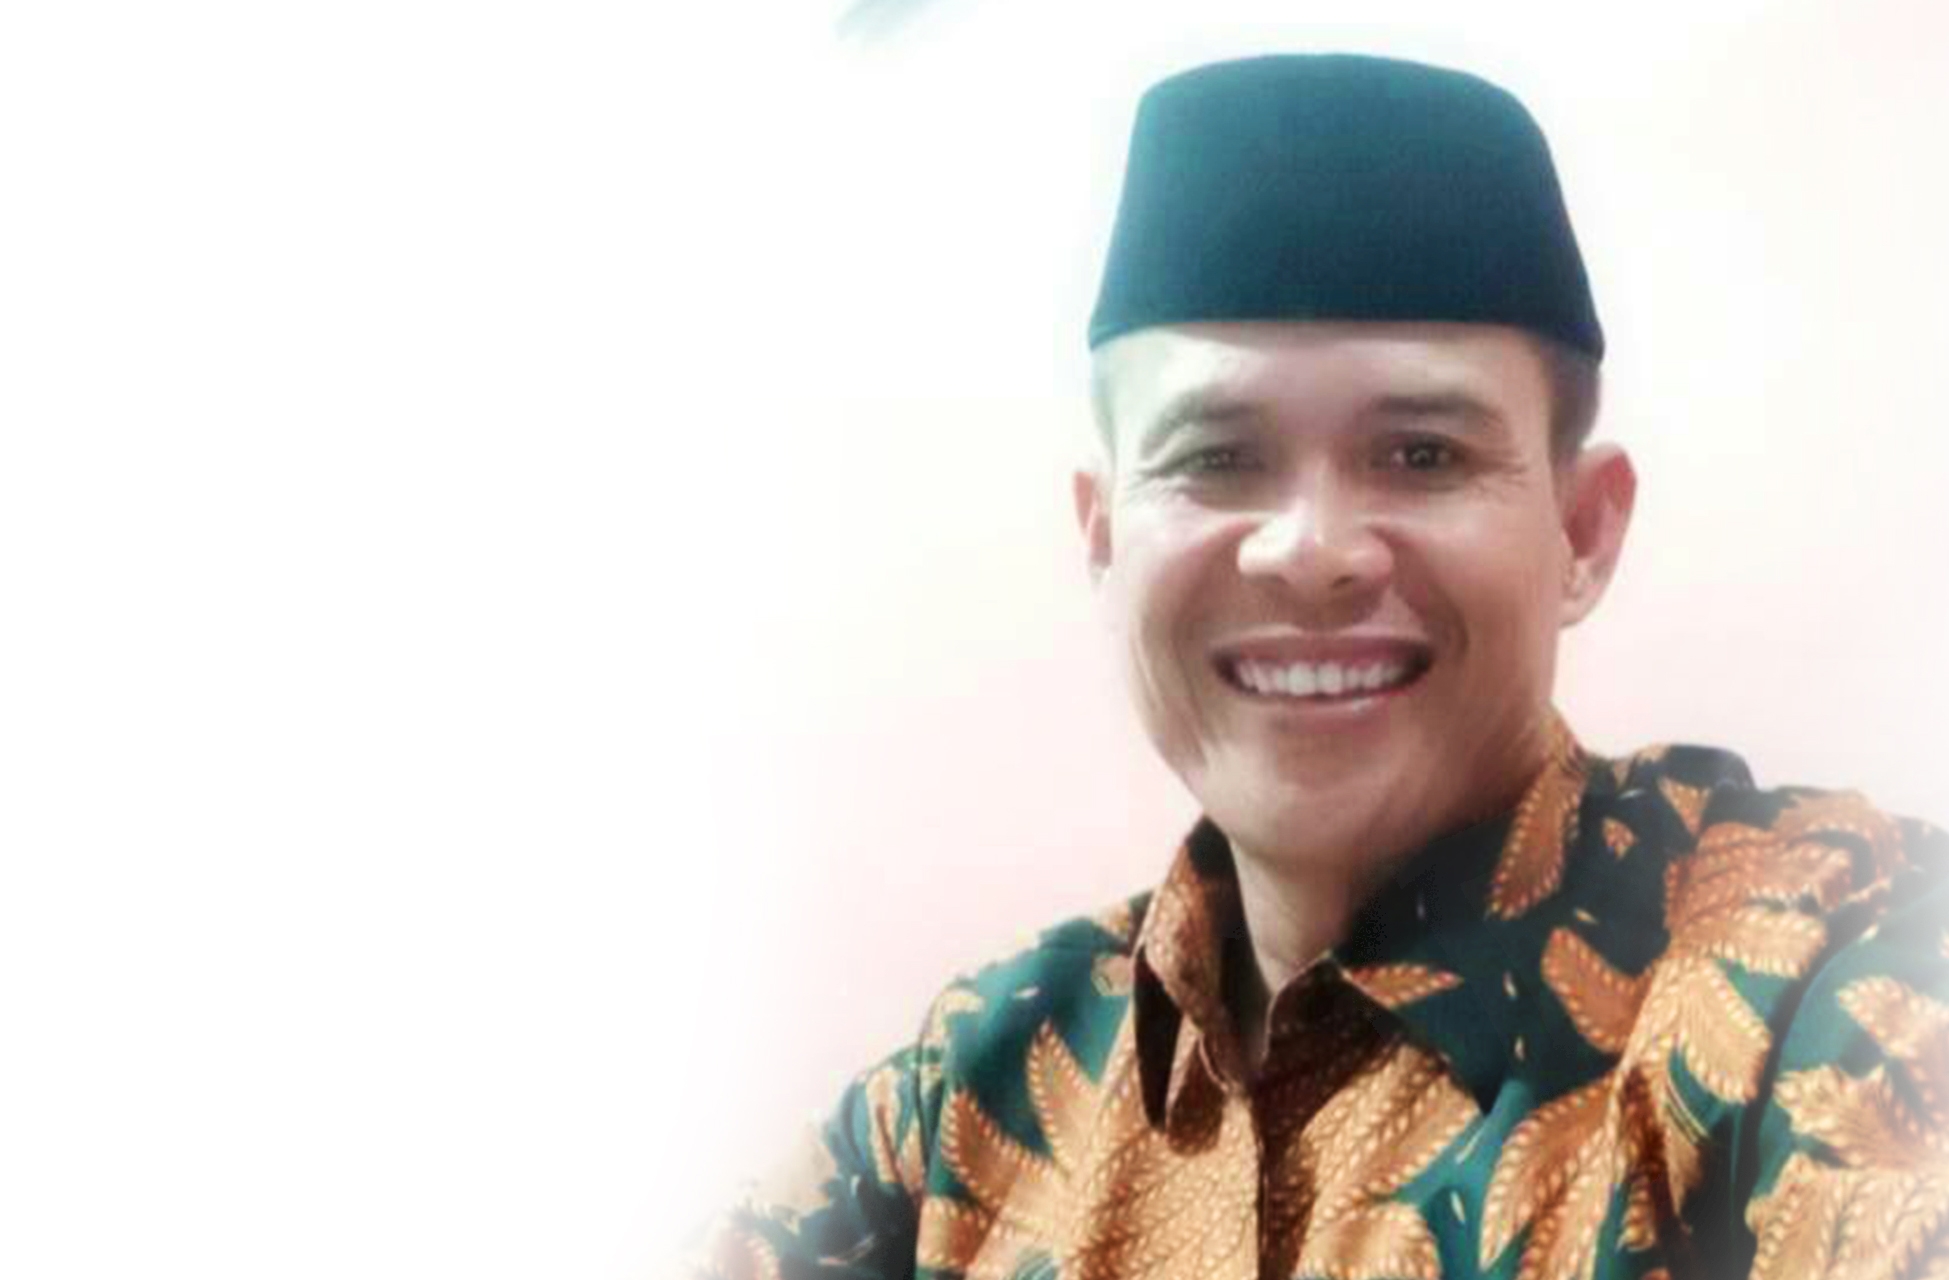 Parade Nusantara dan APDESI Jabar Nilai Kades Tersangkut Korupsi Karena Minimnya Pemahaman Hukum - Desapedia